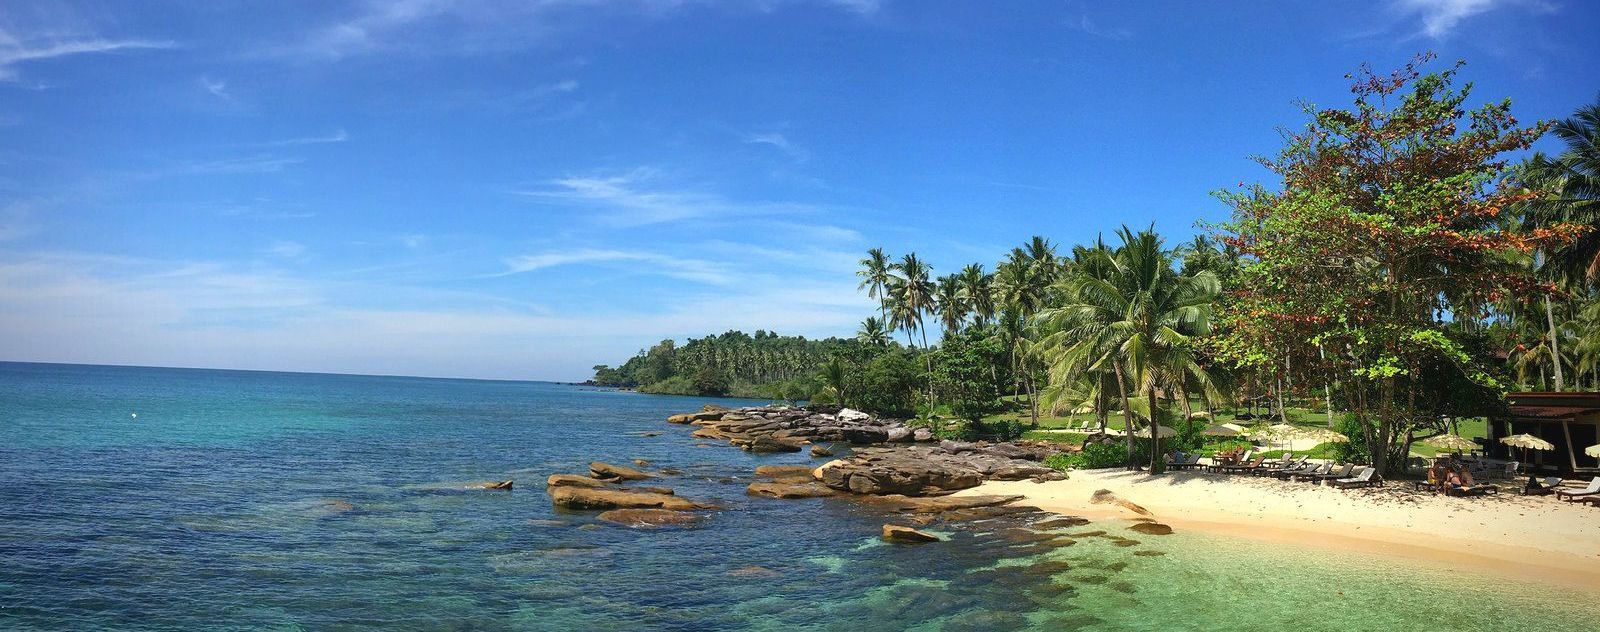 Дешеве житло і безлюдні острови: де у Таїланді знайти "рай у хижині"